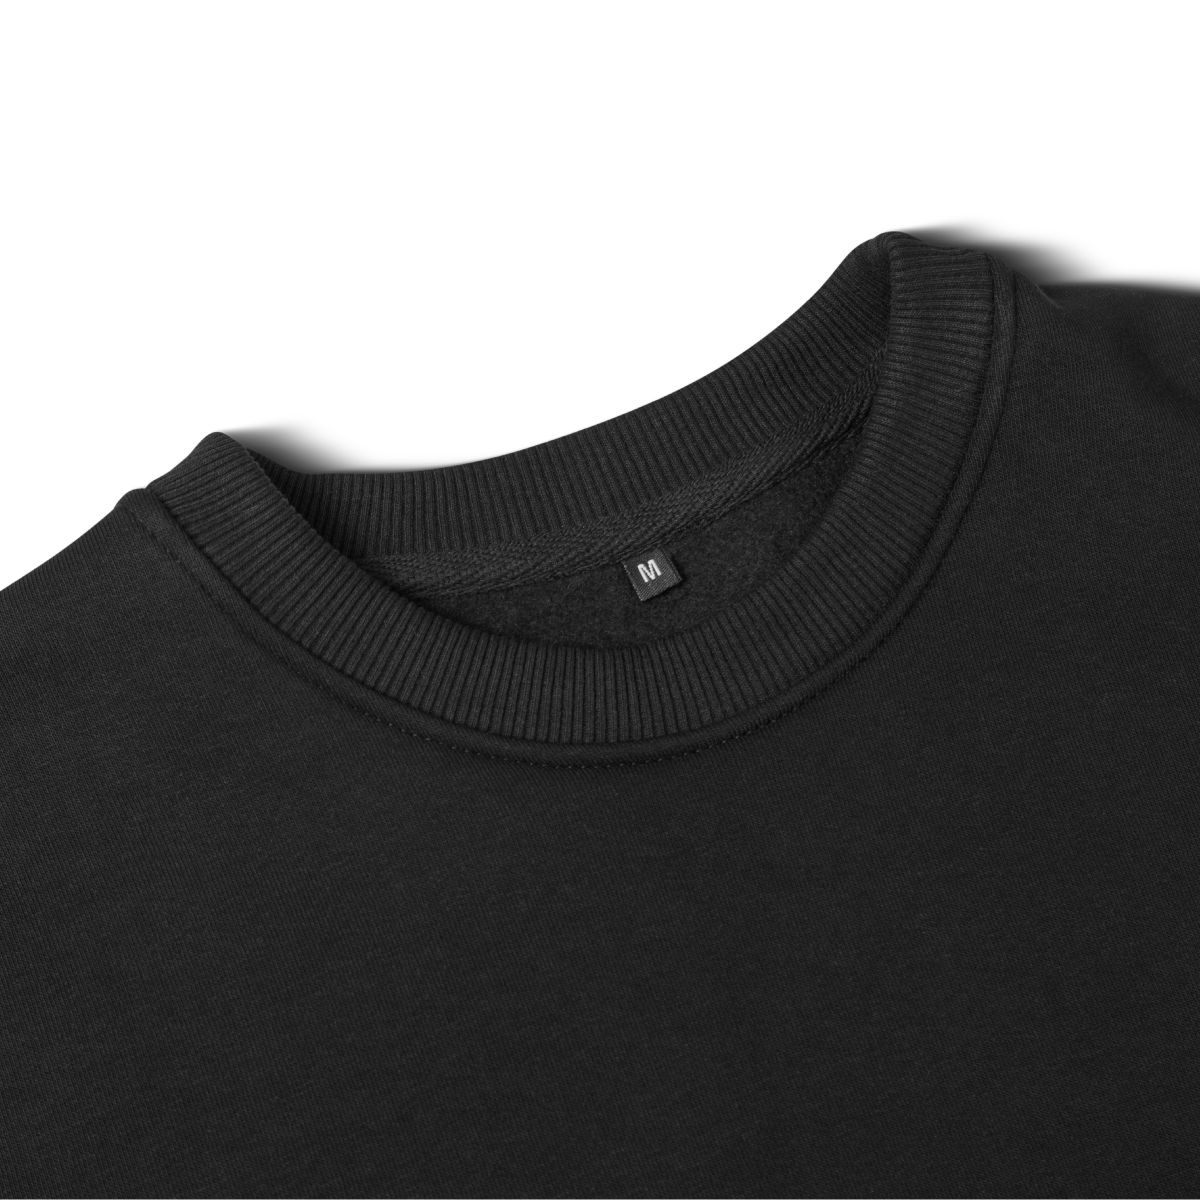 Світшот Base Soft Sweatshirt. Вільний стиль. Колір Чорний/Black. Розмір M 7